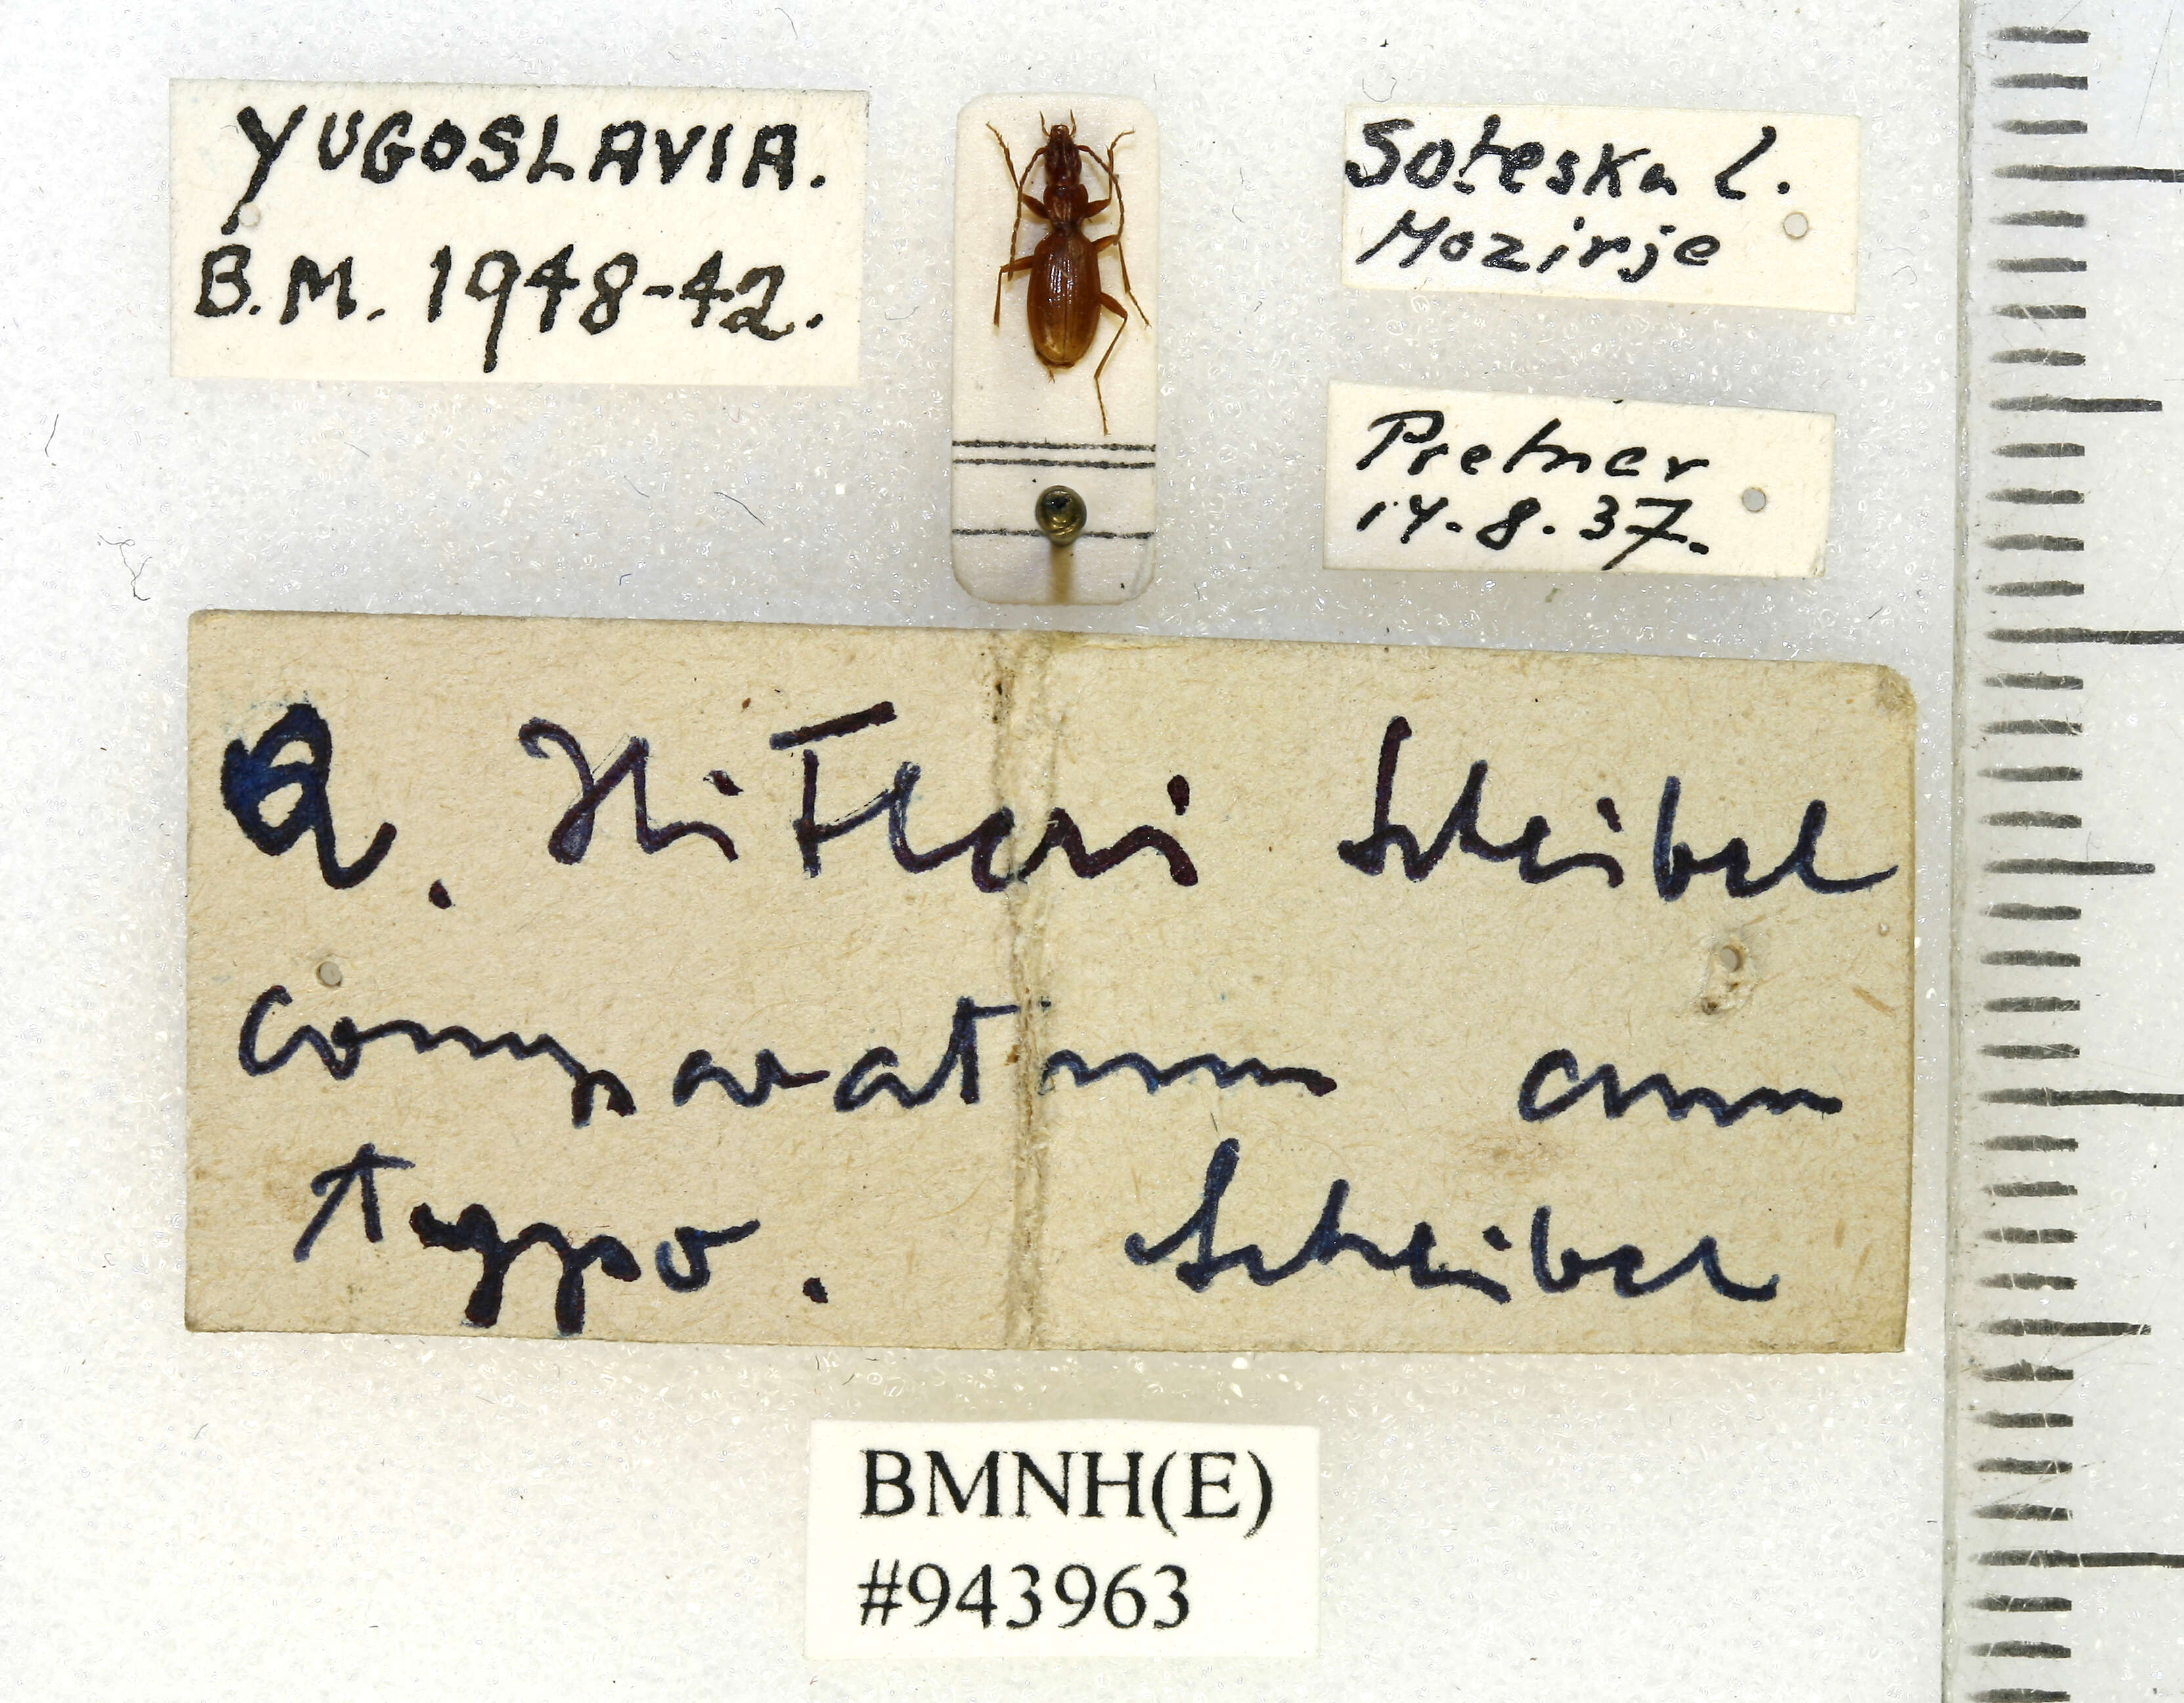 Image of Anophthalmus hitleri Scheibel 1937